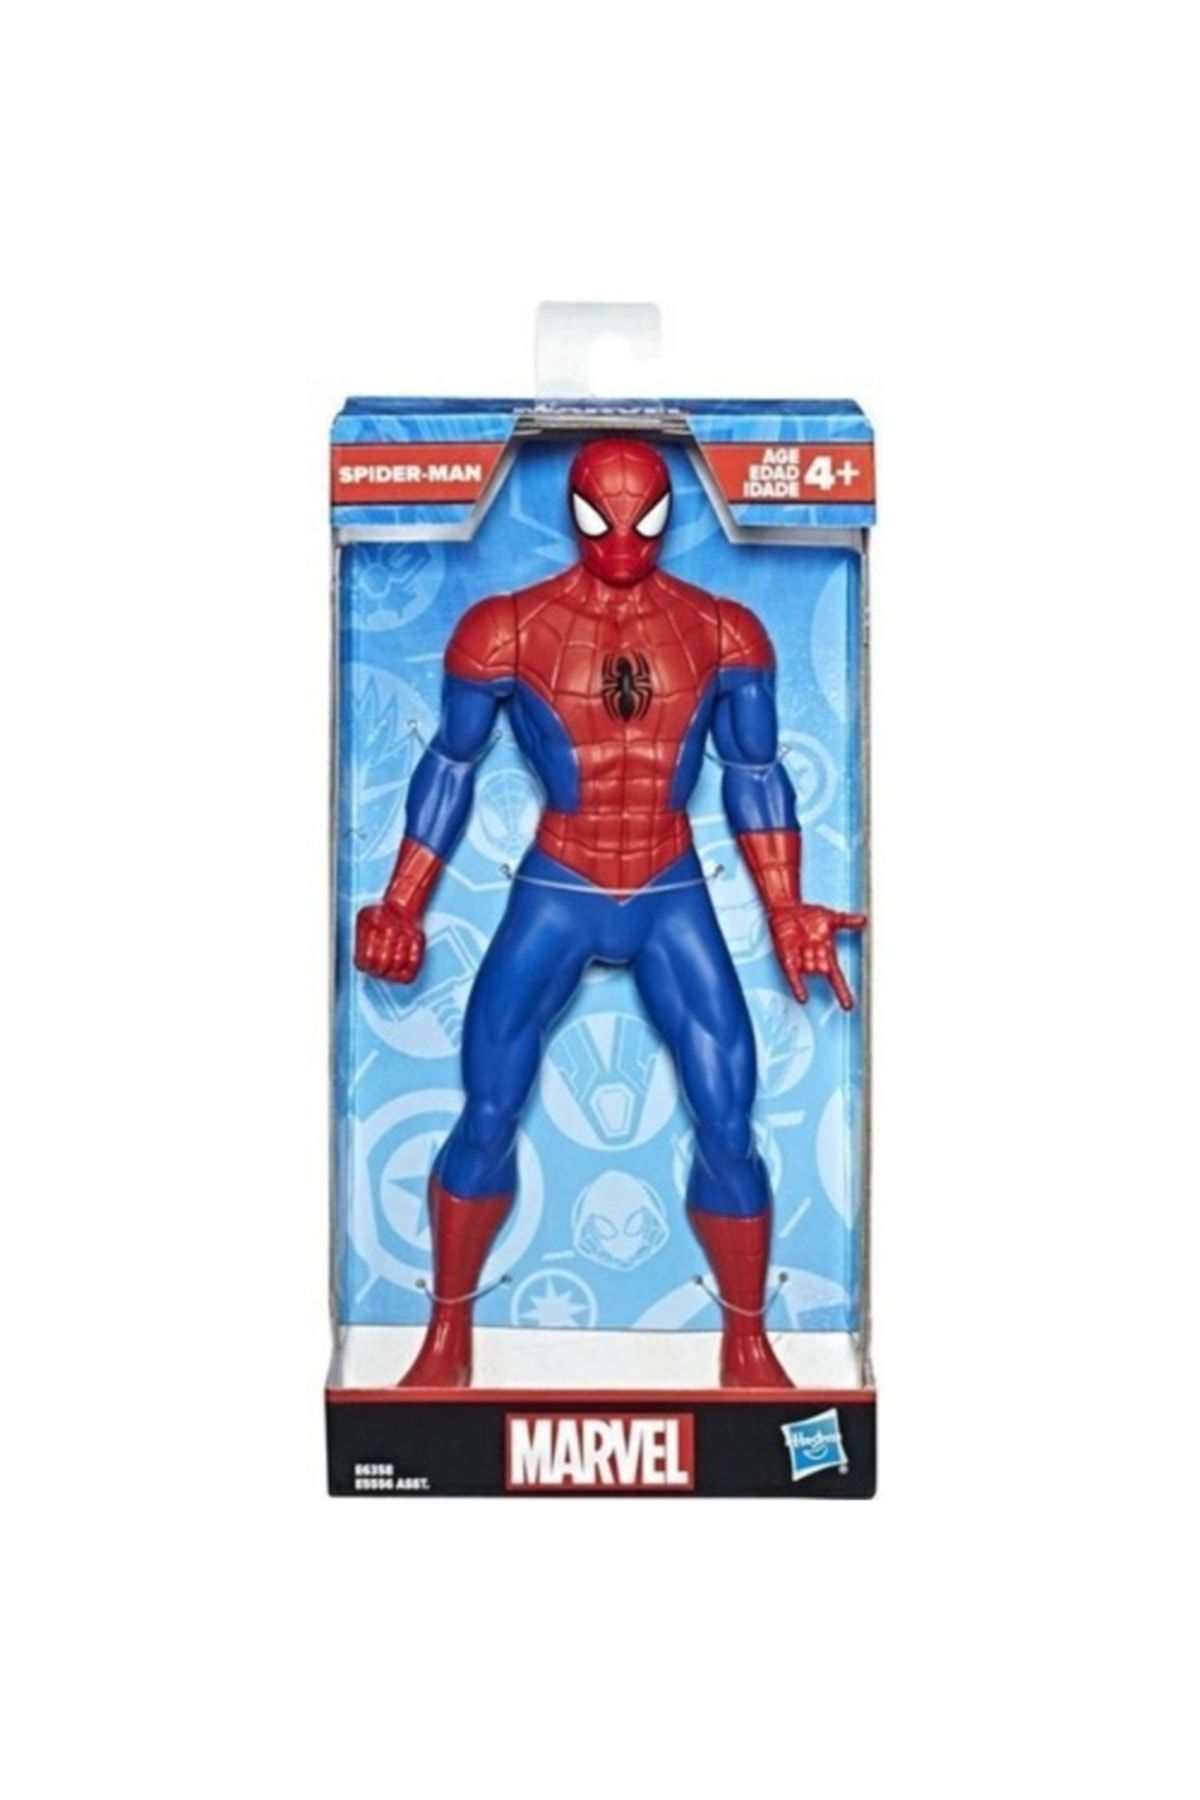 Hasbro Spiderman - Örümcek Adam Figür Marvel E6358 24 Cm E5556 E6358 Lisanslı